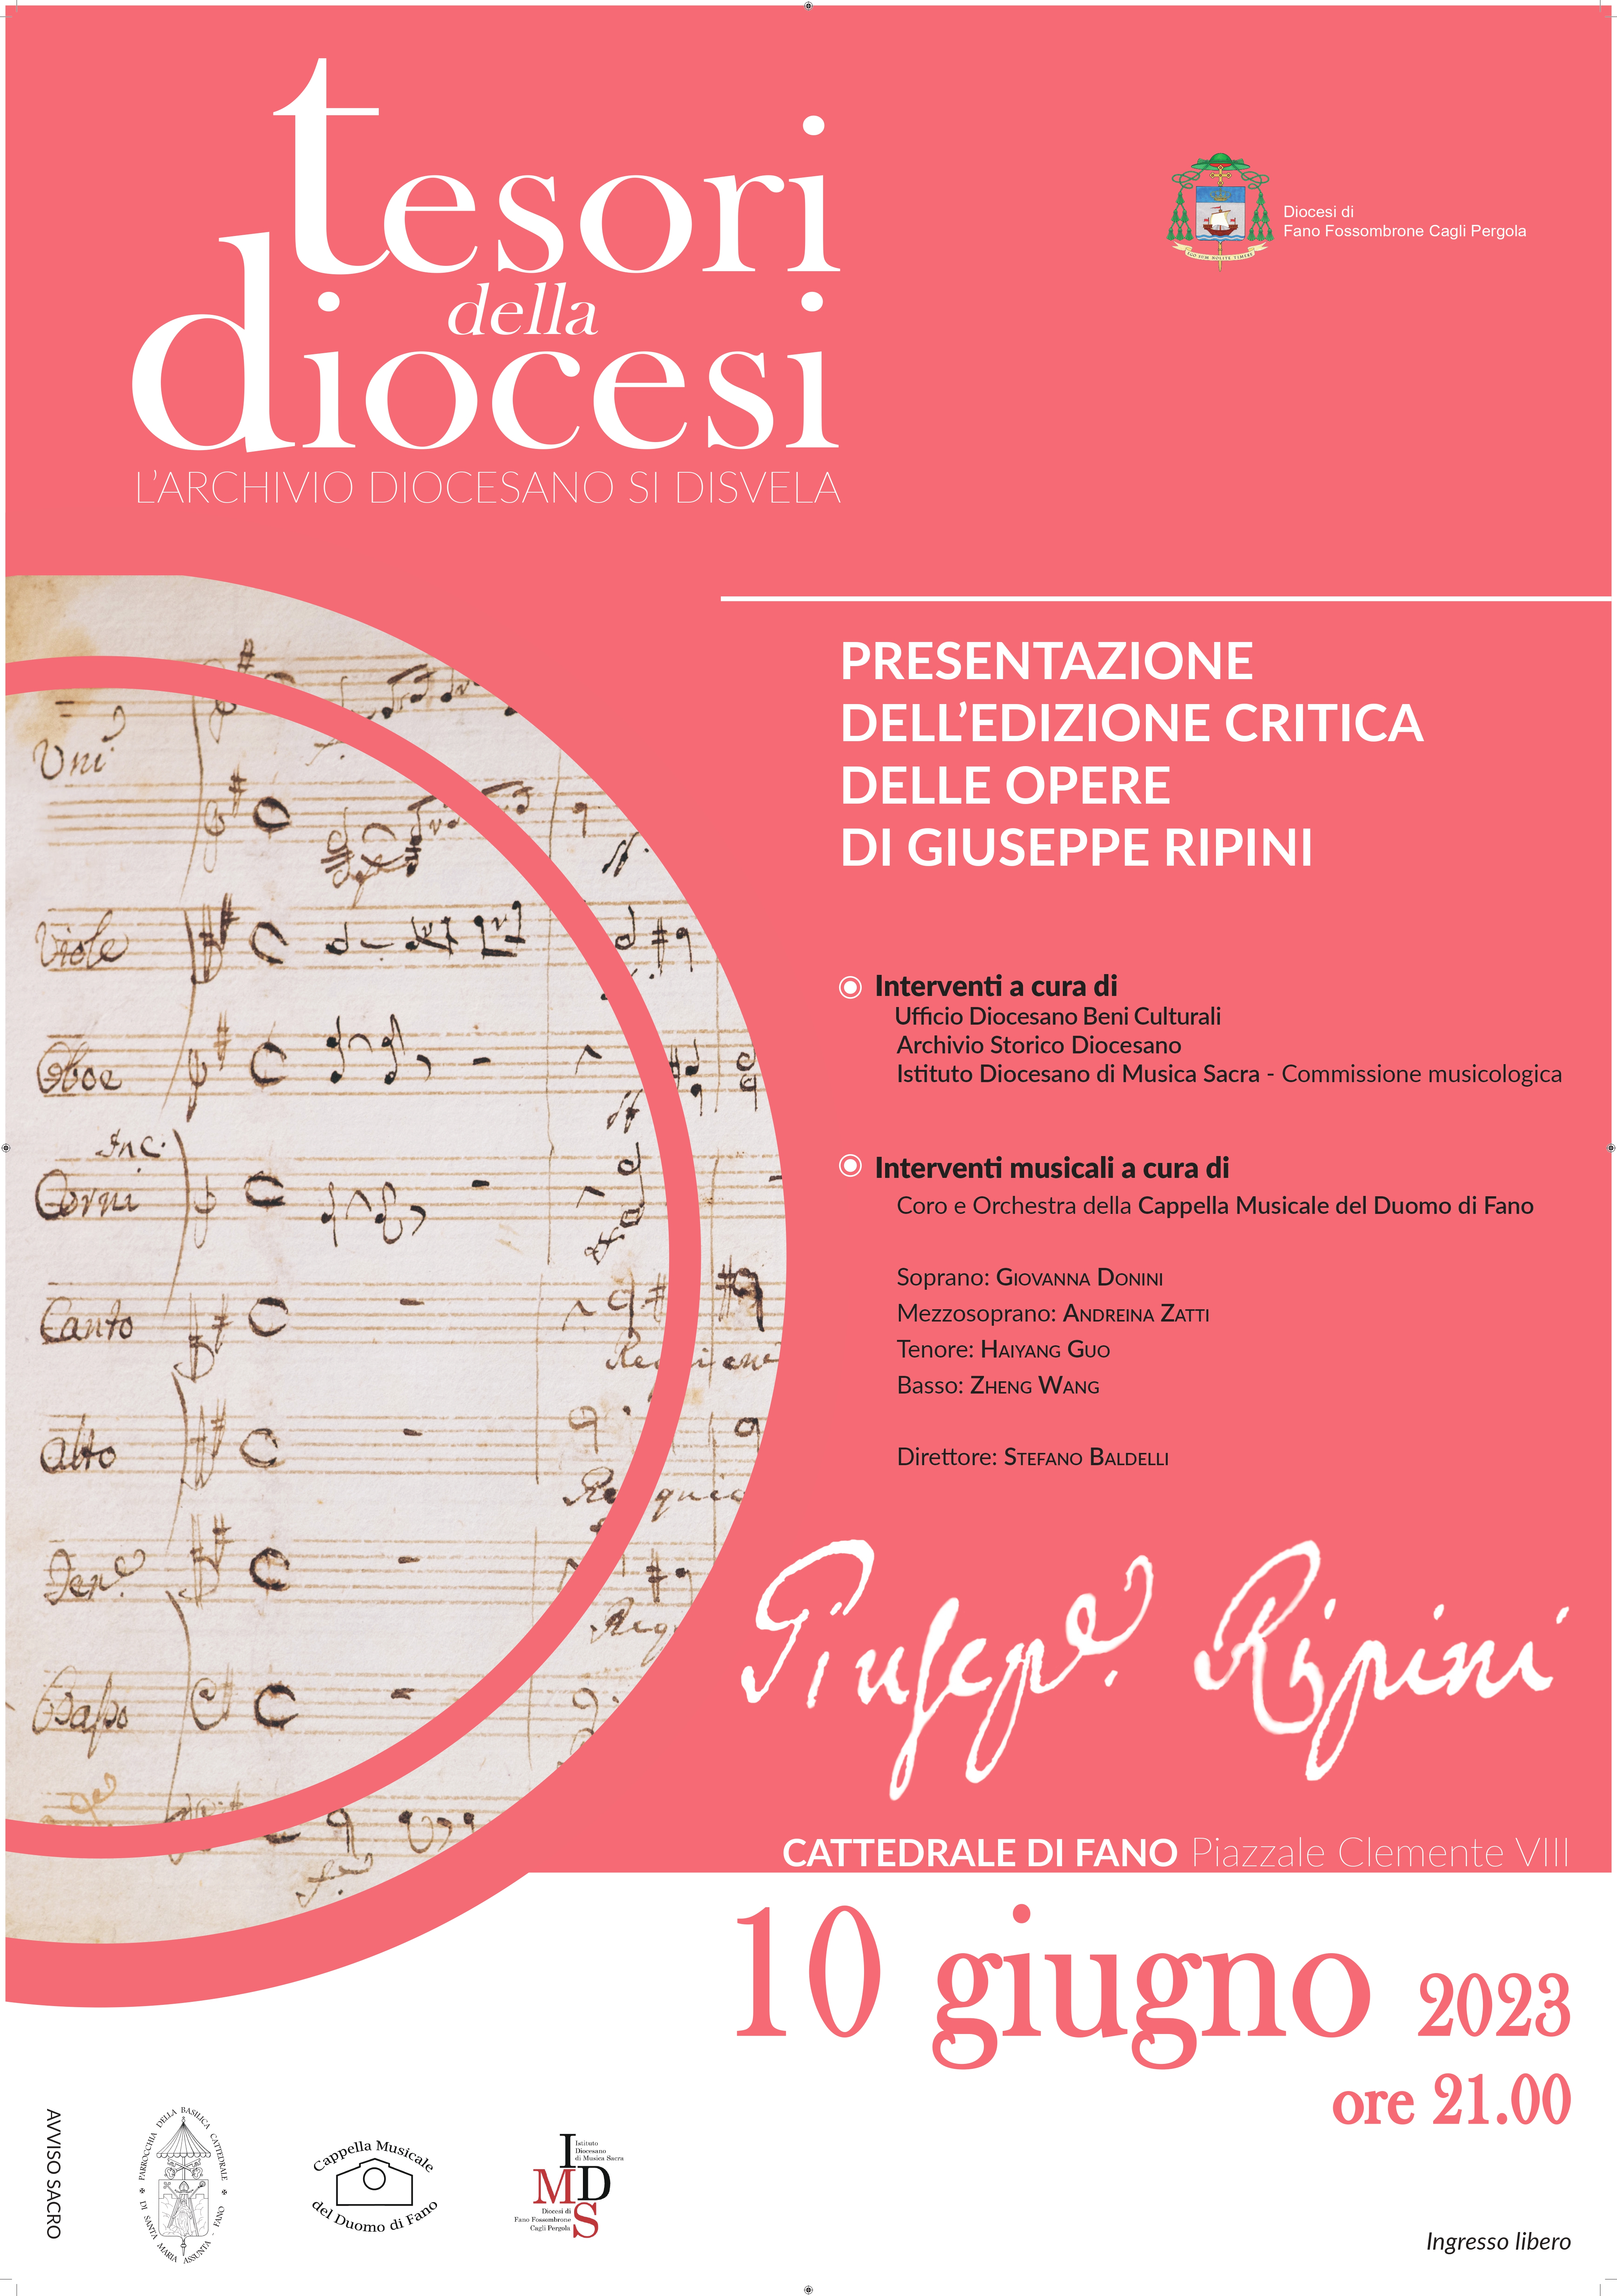 Tesori della Diocesi: Presentazione dell’Edizione critica delle opere di Giuseppe Ripini